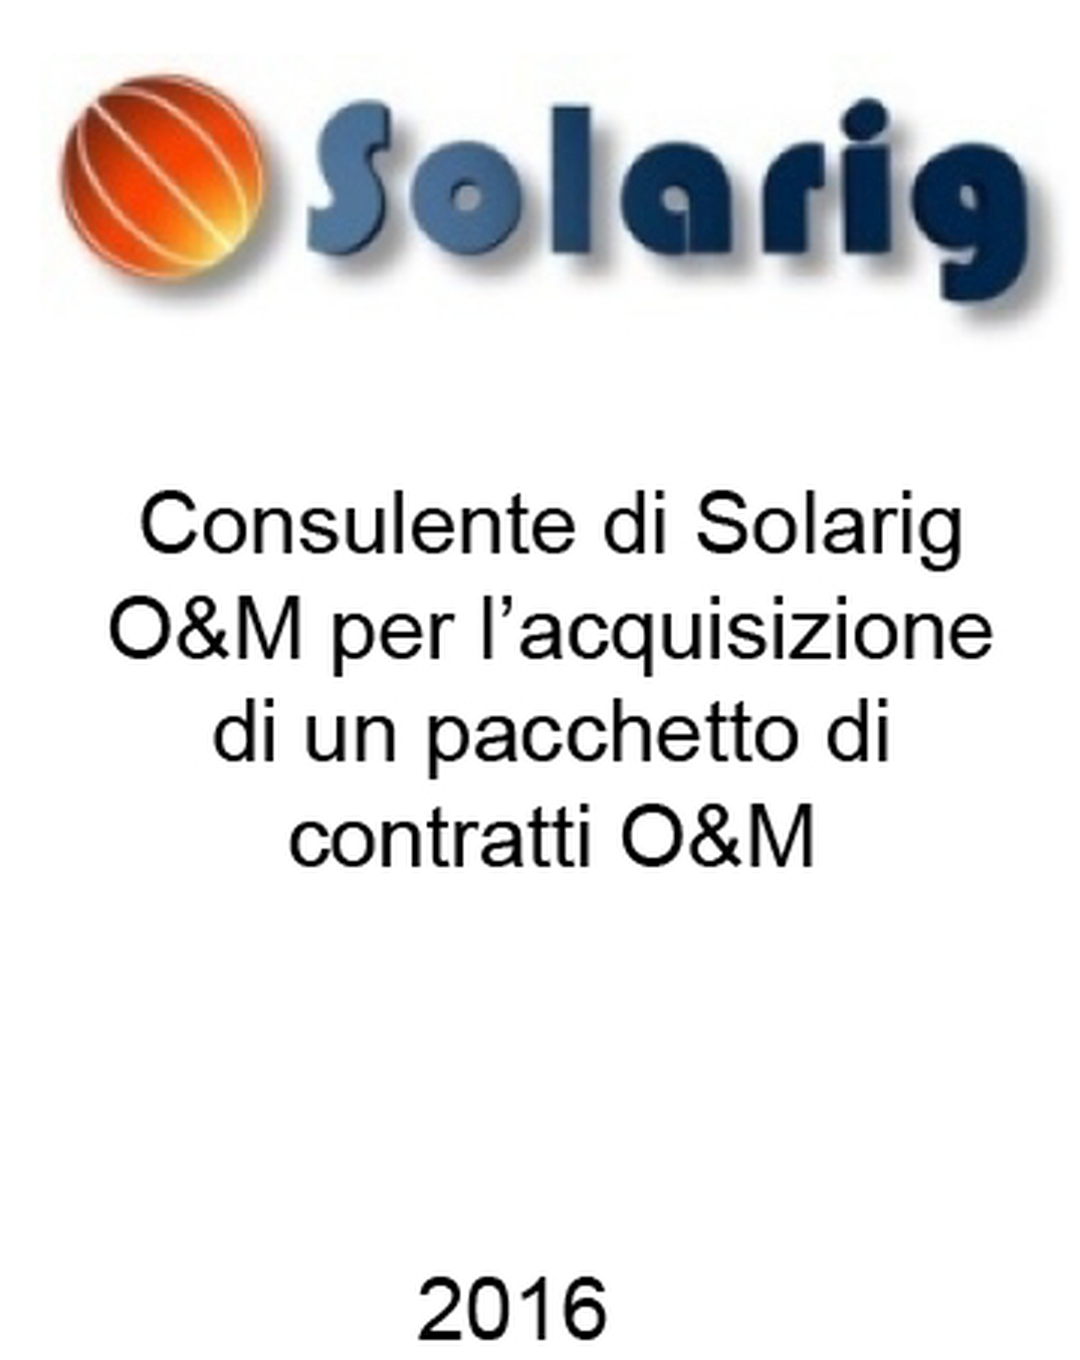 Consulente di Solarig O&M nell'acquisizione di un portafoglio di contratti O&M. Ha agito in qualità di consulente dell'Acquirente. Incarico completato nel 2016.